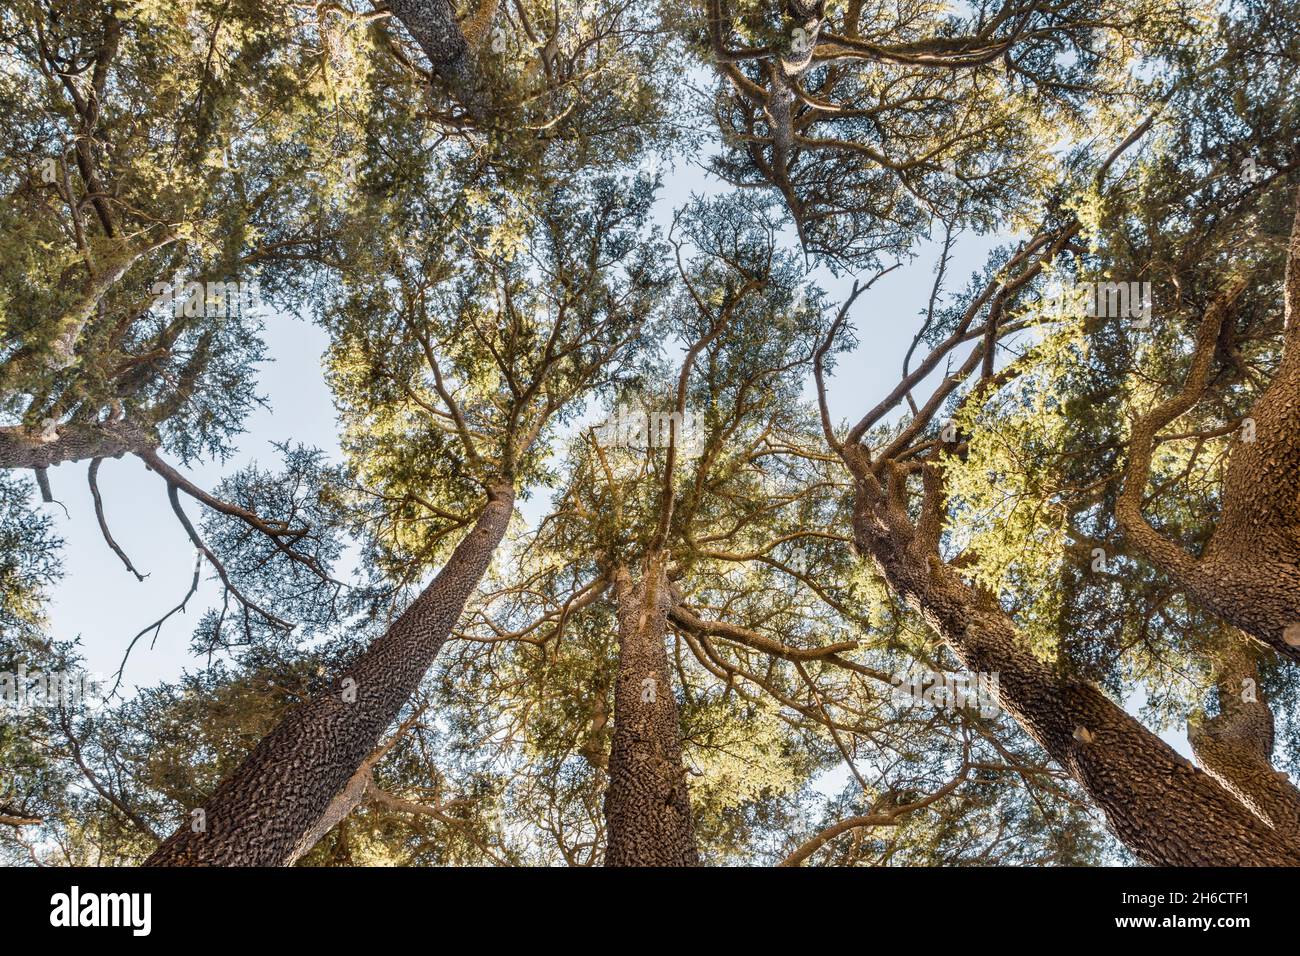 Bottom view of Cedrus Libani trees in Cedars of God forest, Arz, Bsharri, Lebanon Stock Photo